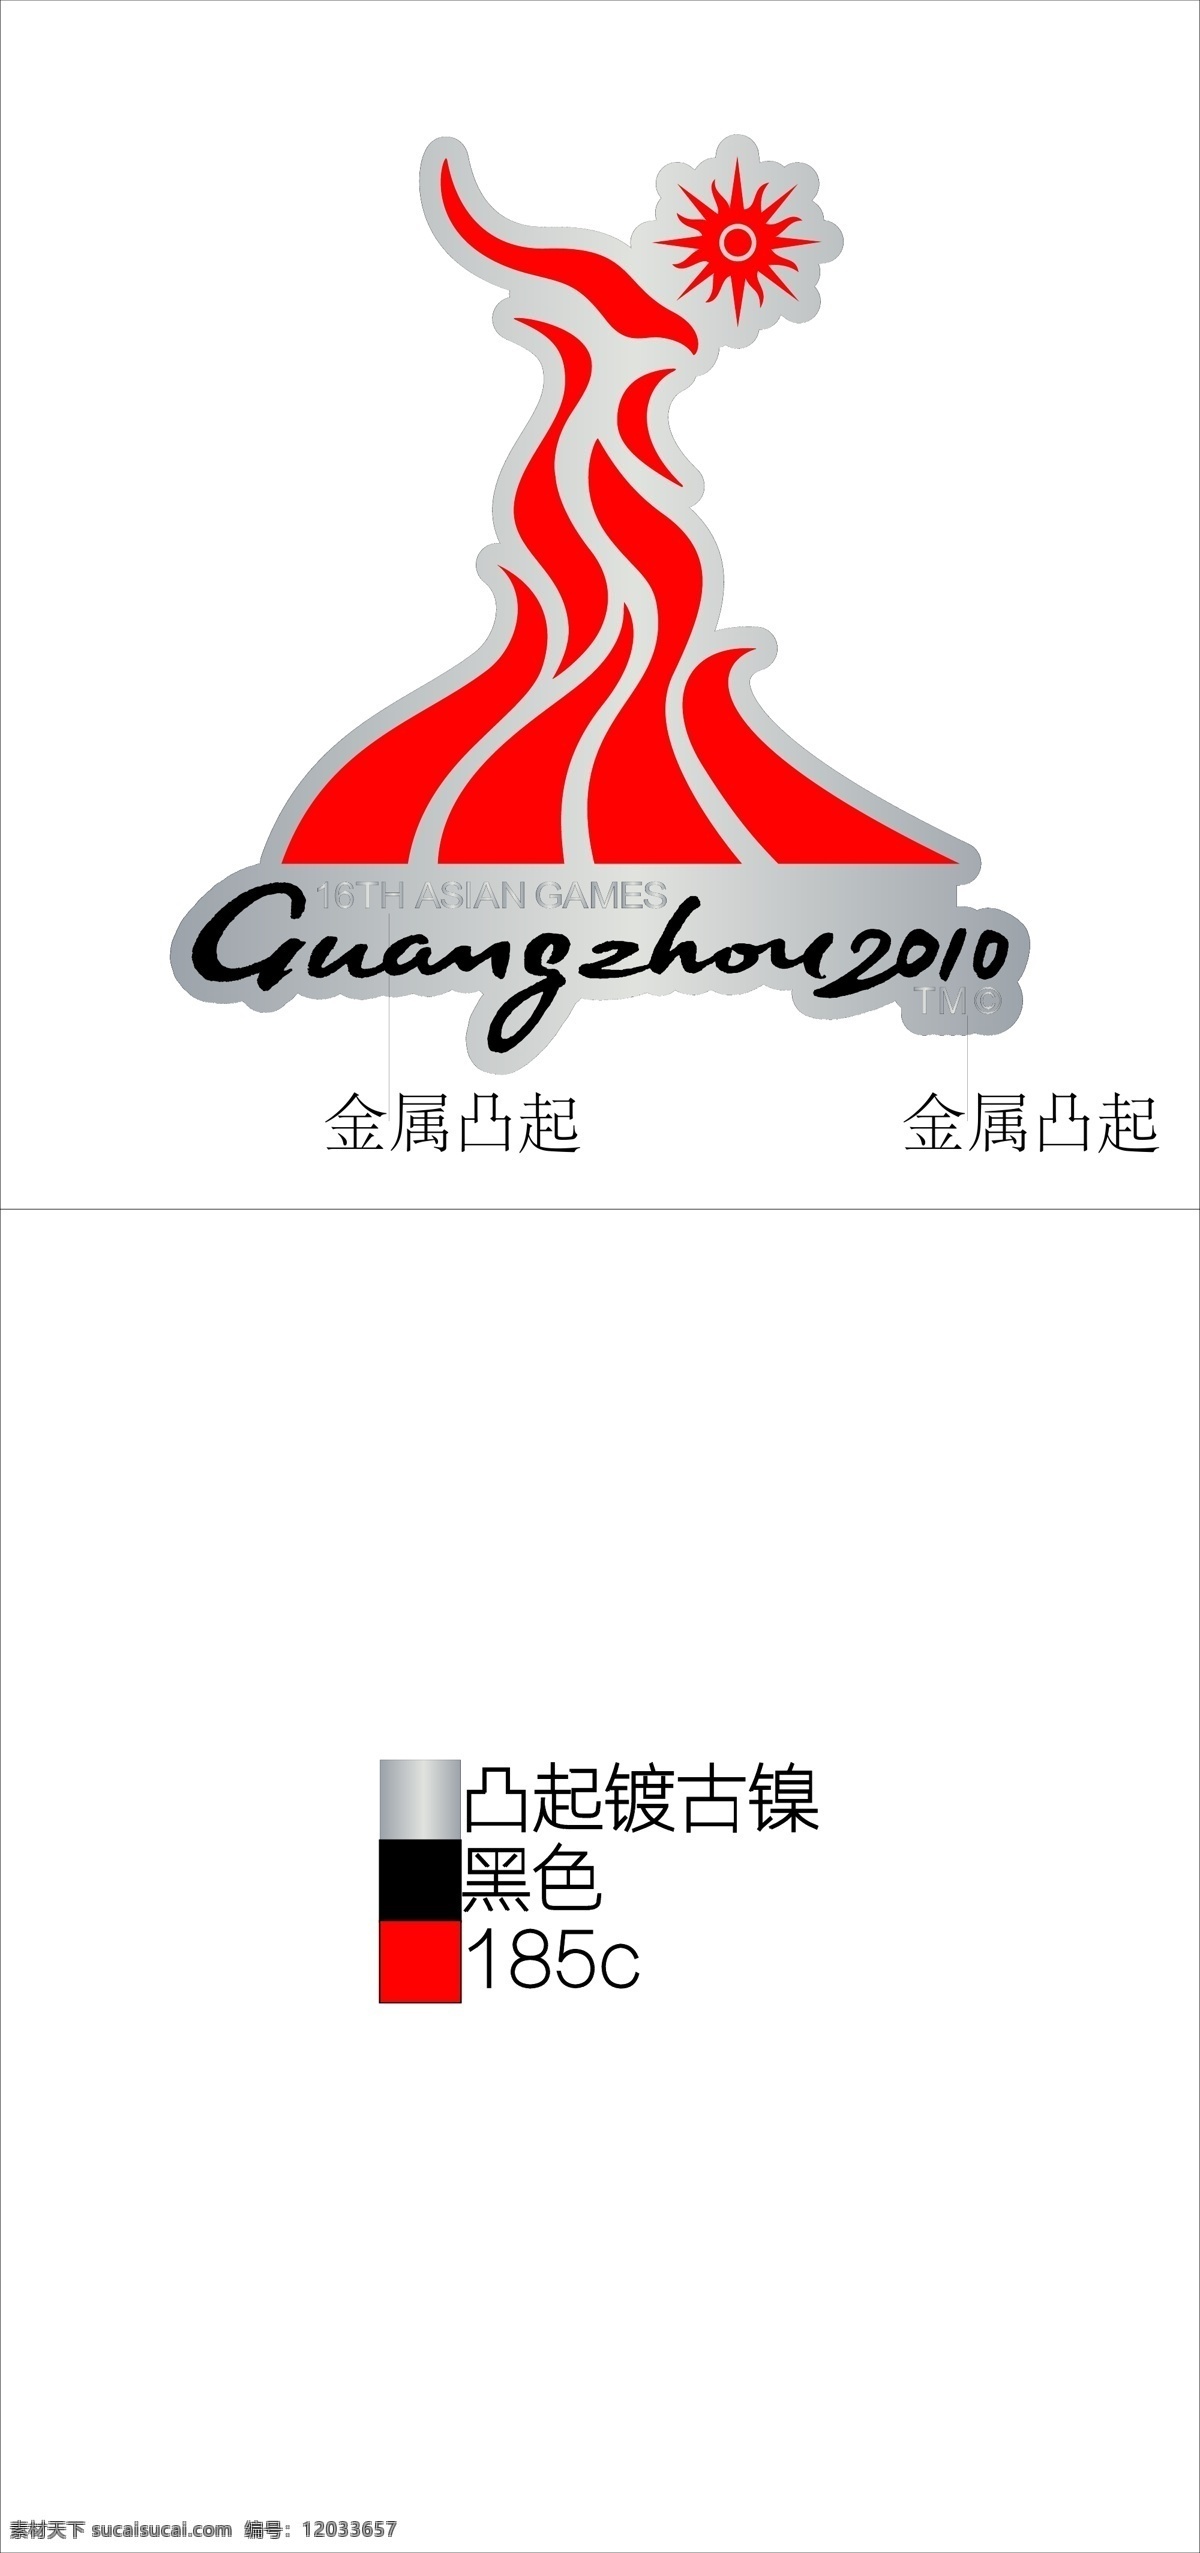 2010 年 广州 亚运 会徽 第16届 亚运会 2010年 徽章 标志图标 其他图标